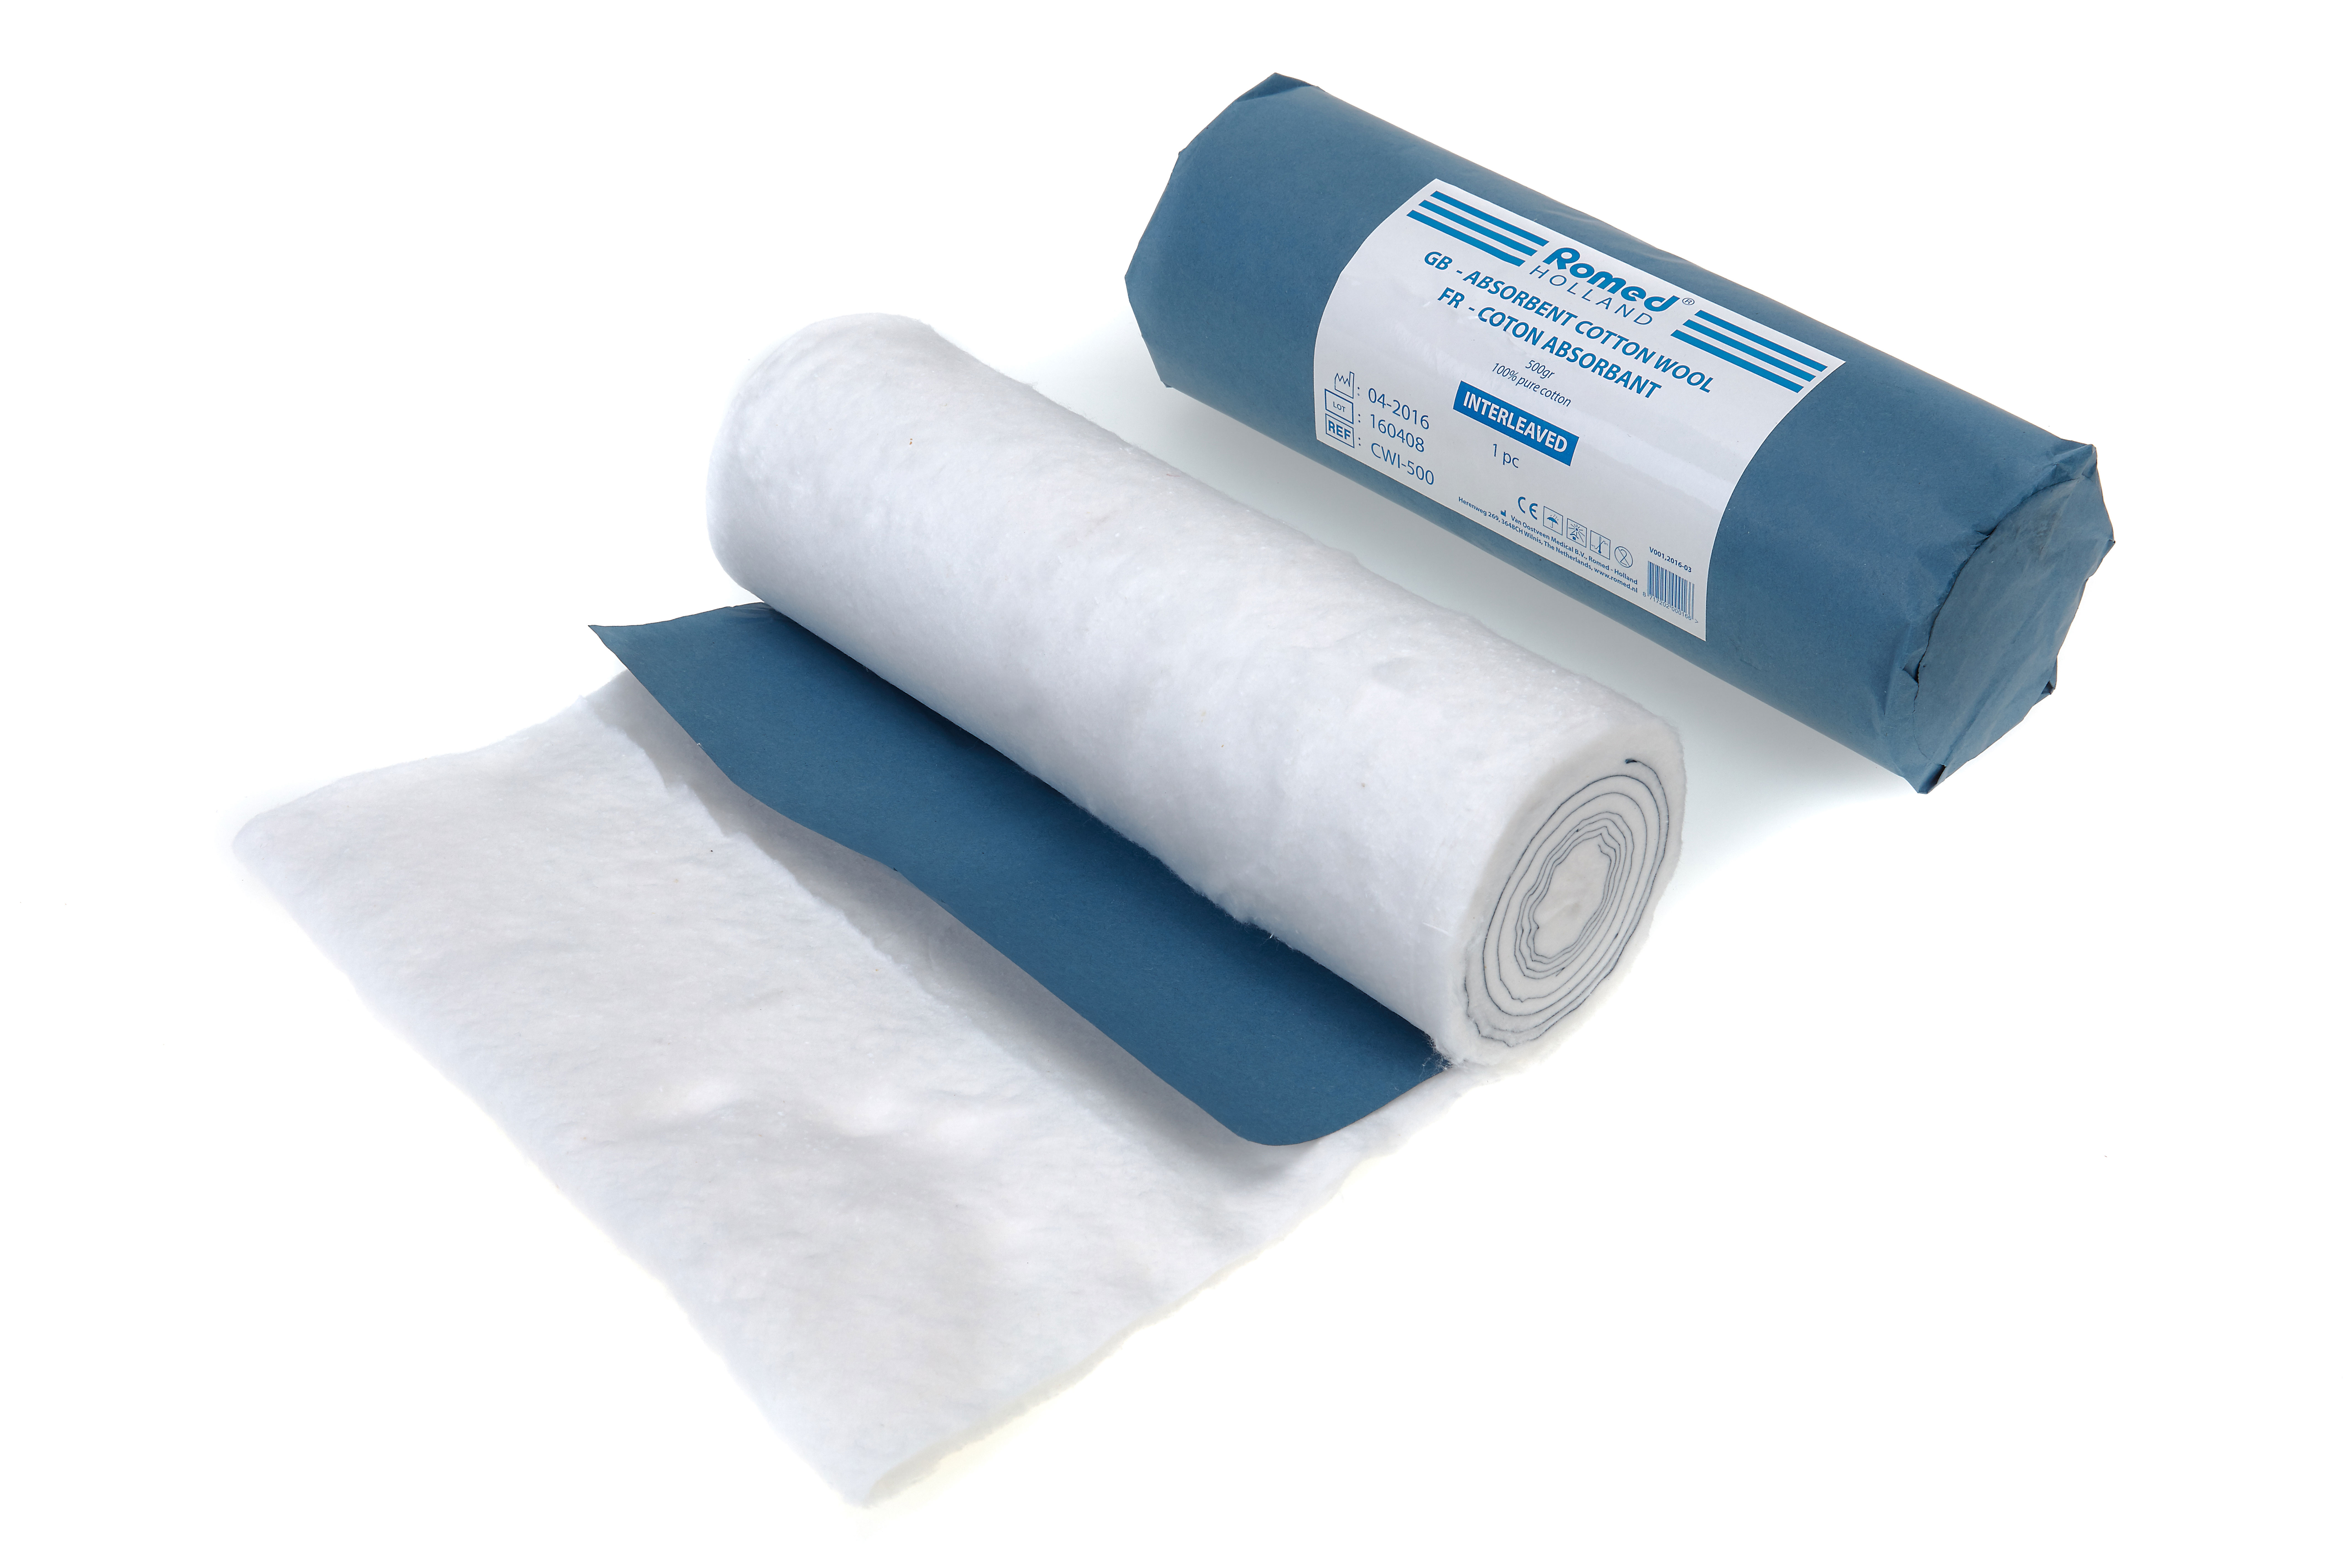 CWI-500 Algodão em rama absorvente Romed, 500 g, desengordurado e branqueado, entretecido, com papel azul: corte final, 100% algodão puro, à un., 30 rolos por caixa de envio.